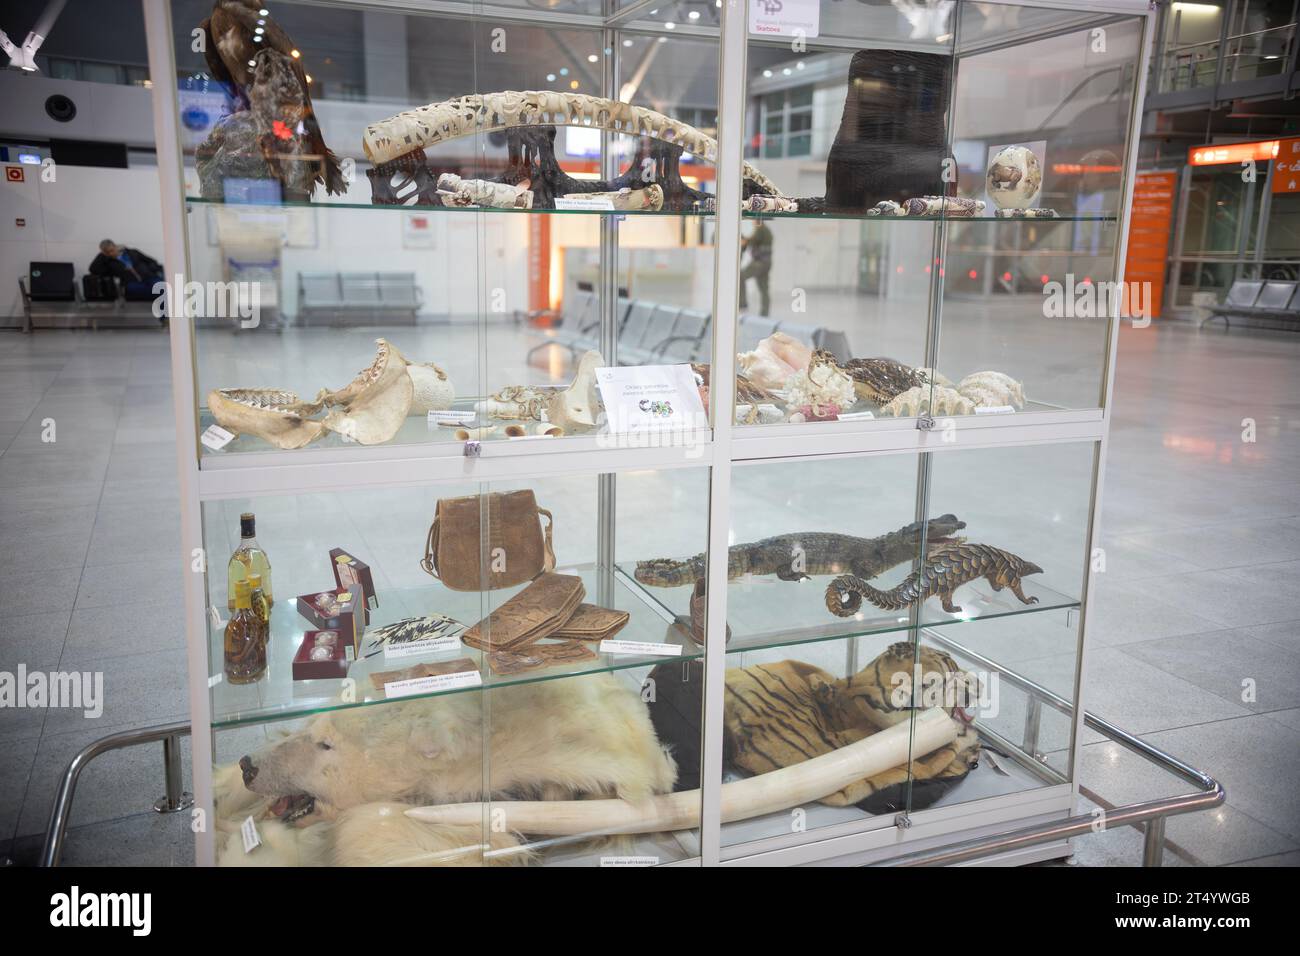 11. november 2018, Warschau, Polen - Ausstellung von Schmuggelwaren, die für den Transport am Flughafen verboten sind - Schlangen, Waffen, Bärenhaut, Tiger Stockfoto